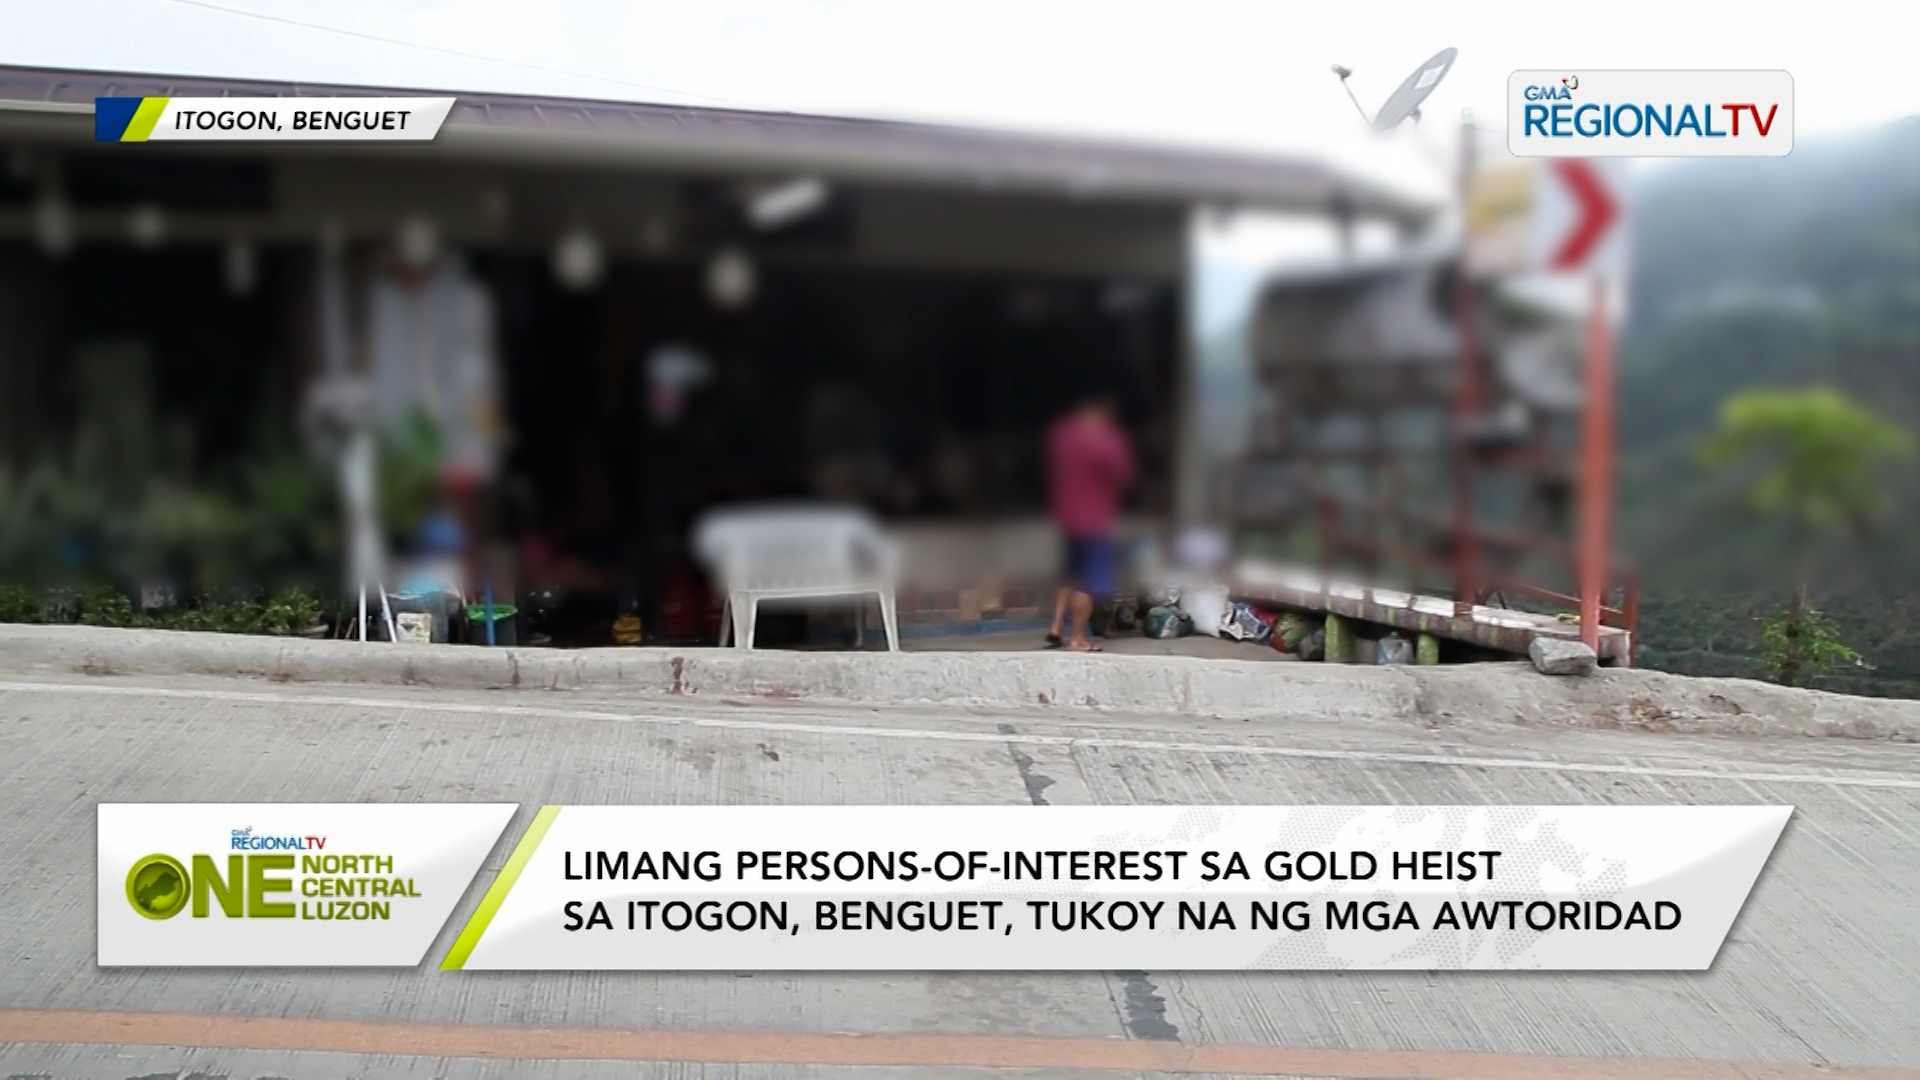 5 persons-of-interest sa gold heist sa Benguet, tukoy na ng mga awtoridad